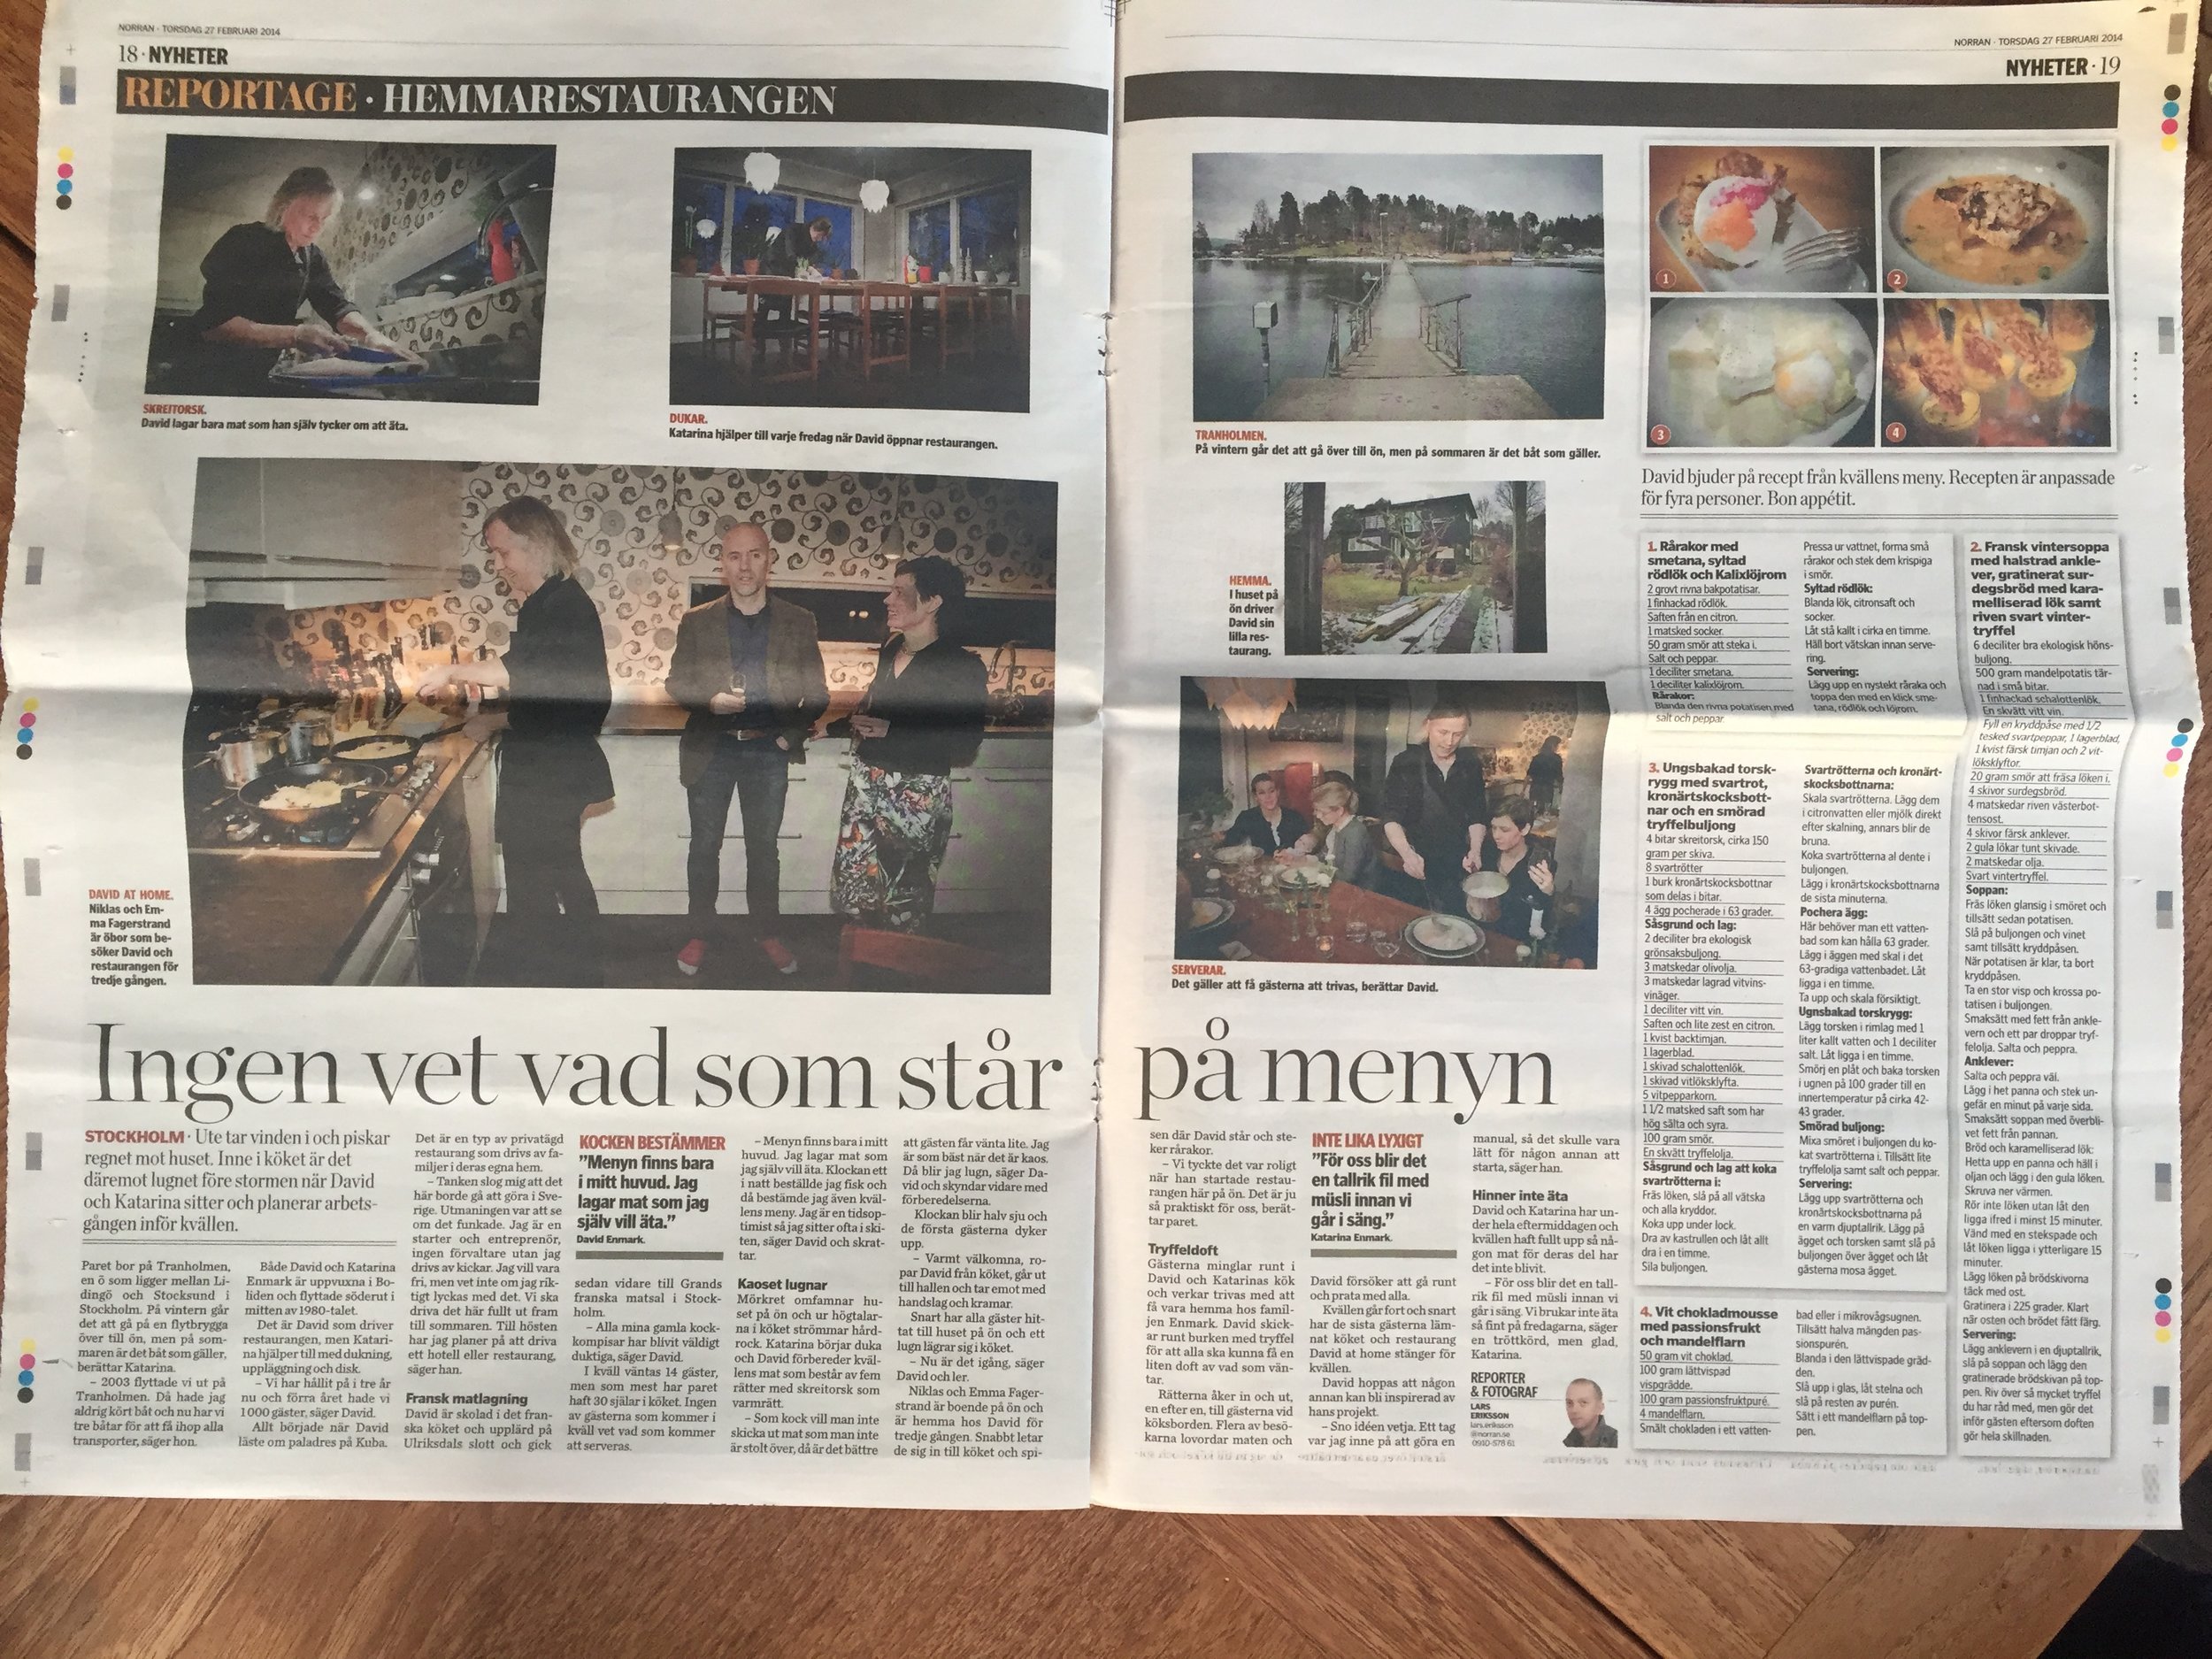 Skellefteå local newspaper visits.